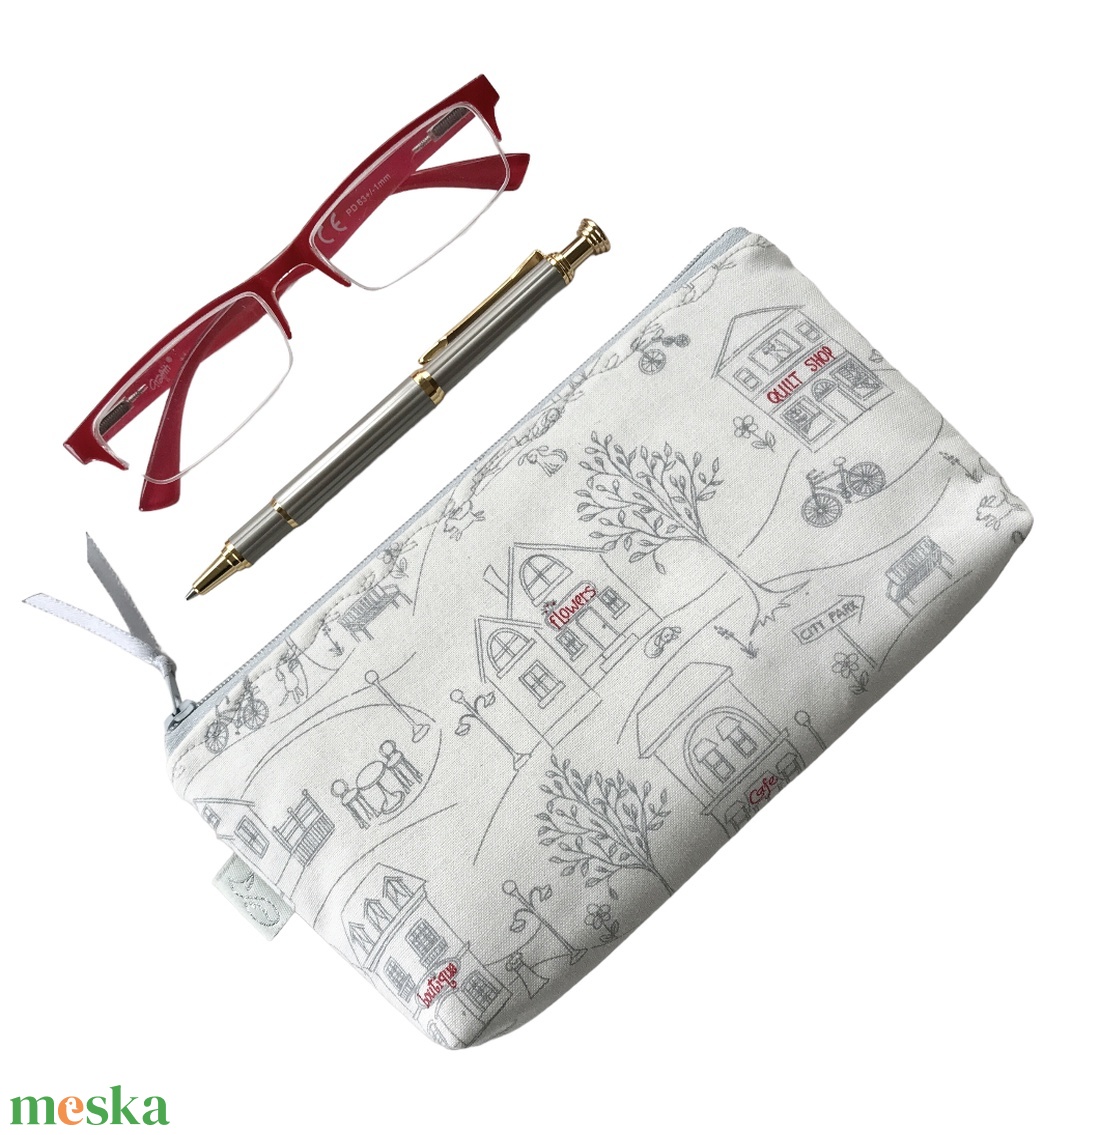 Otthon, édes otthon mintás tolltartó neszesszer, szemüvegtok vagy mobiltok - Artiroka design - táska & tok - neszesszer - Meska.hu